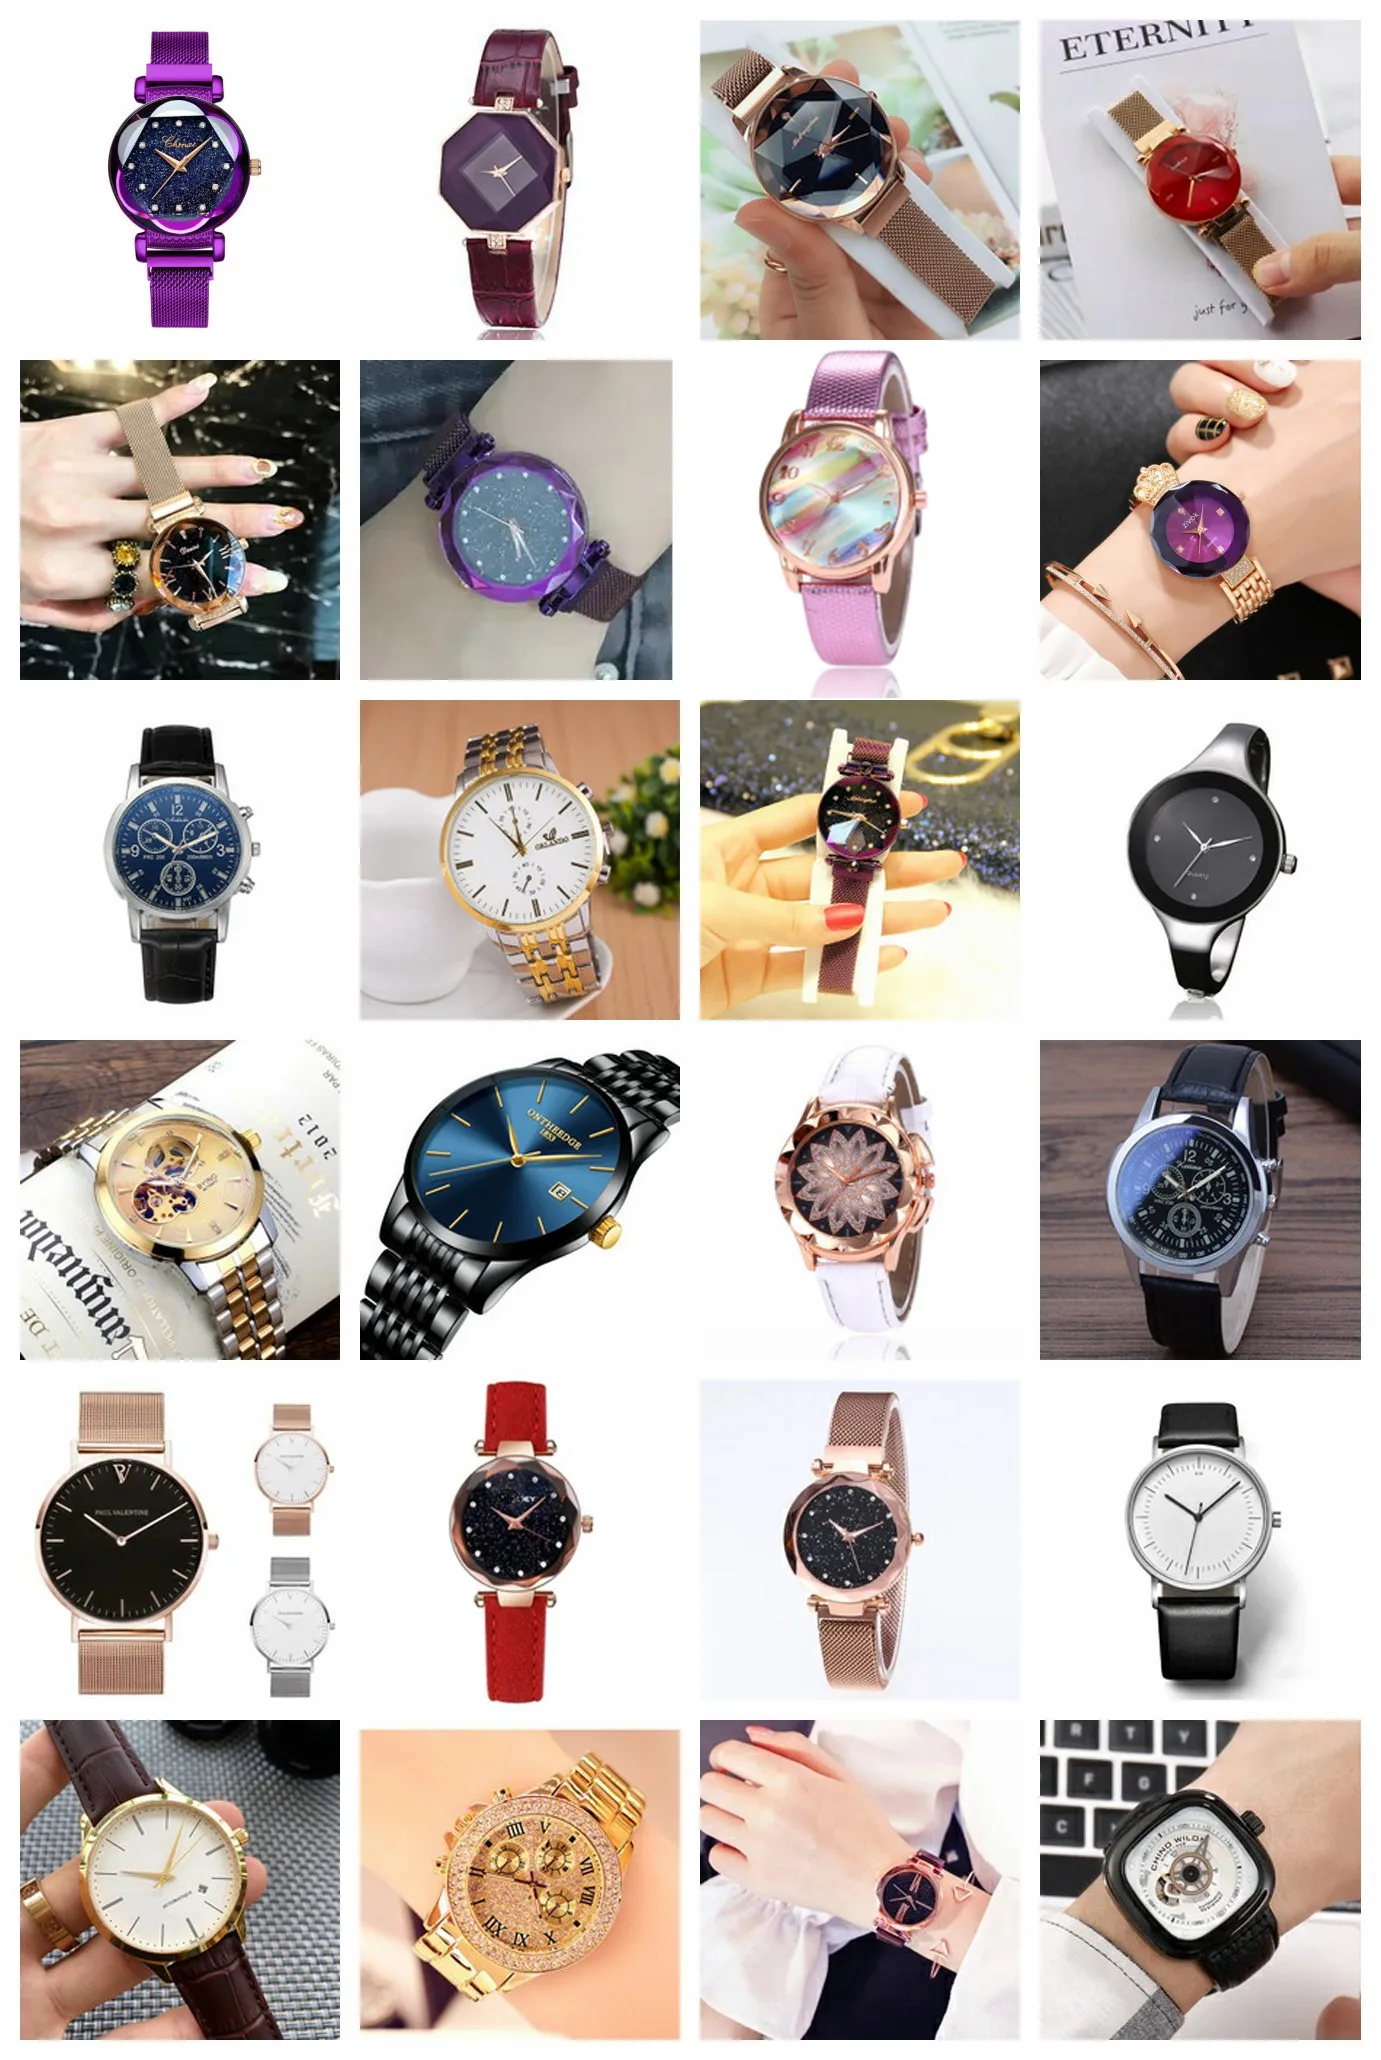 Latest gear second hand couple watch,wrist watch women branded watch custom